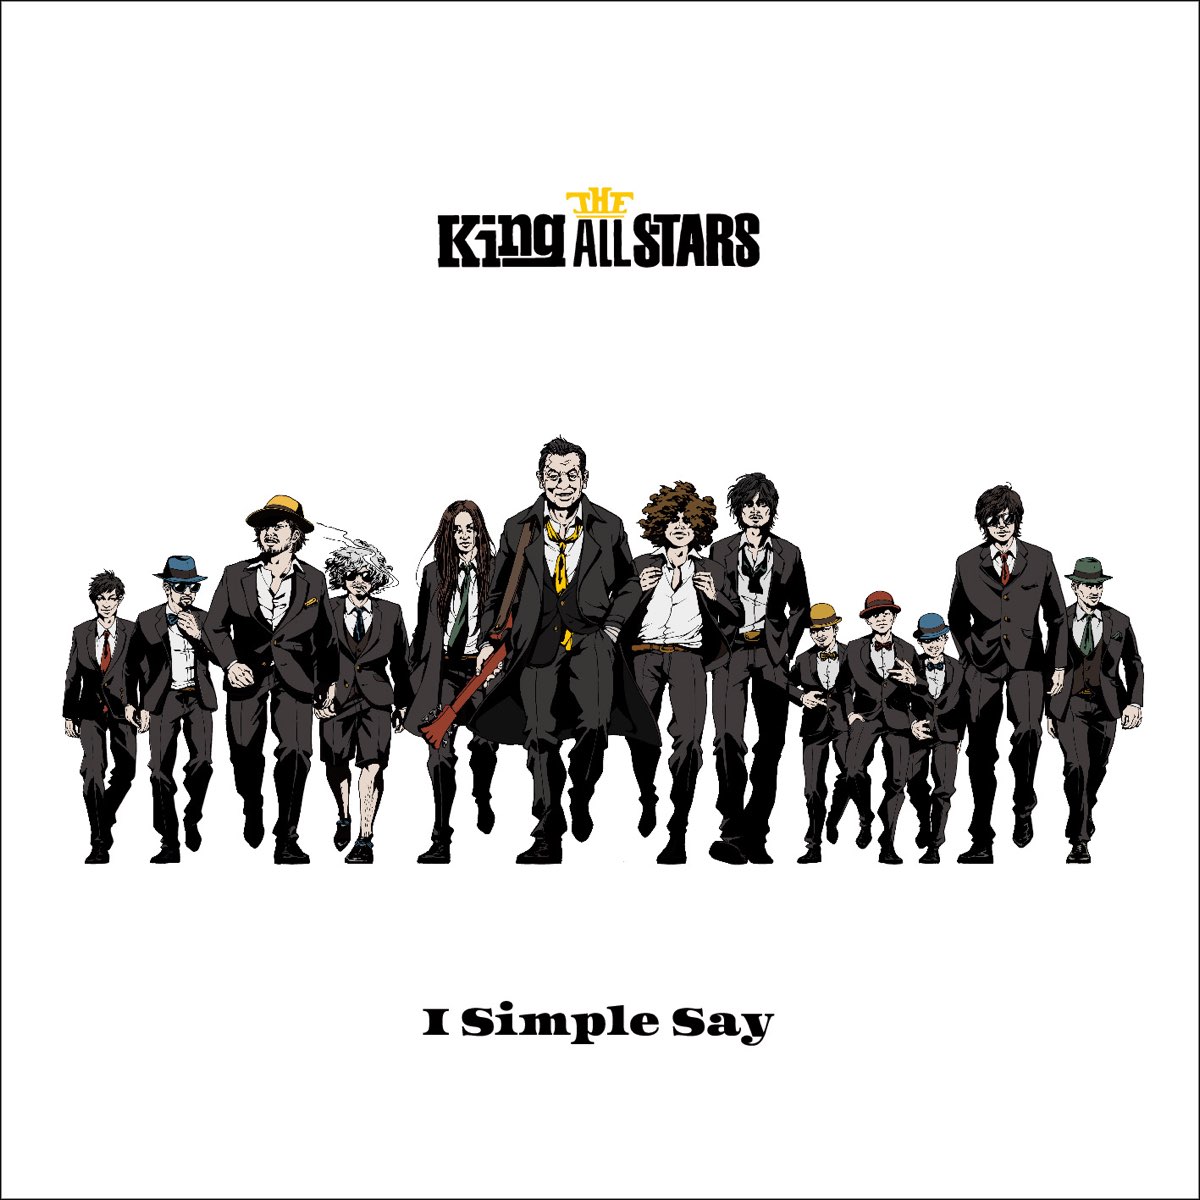 Simply said. All Stars музыкальная группа. All Kings. All Star песня. Simon says CD.